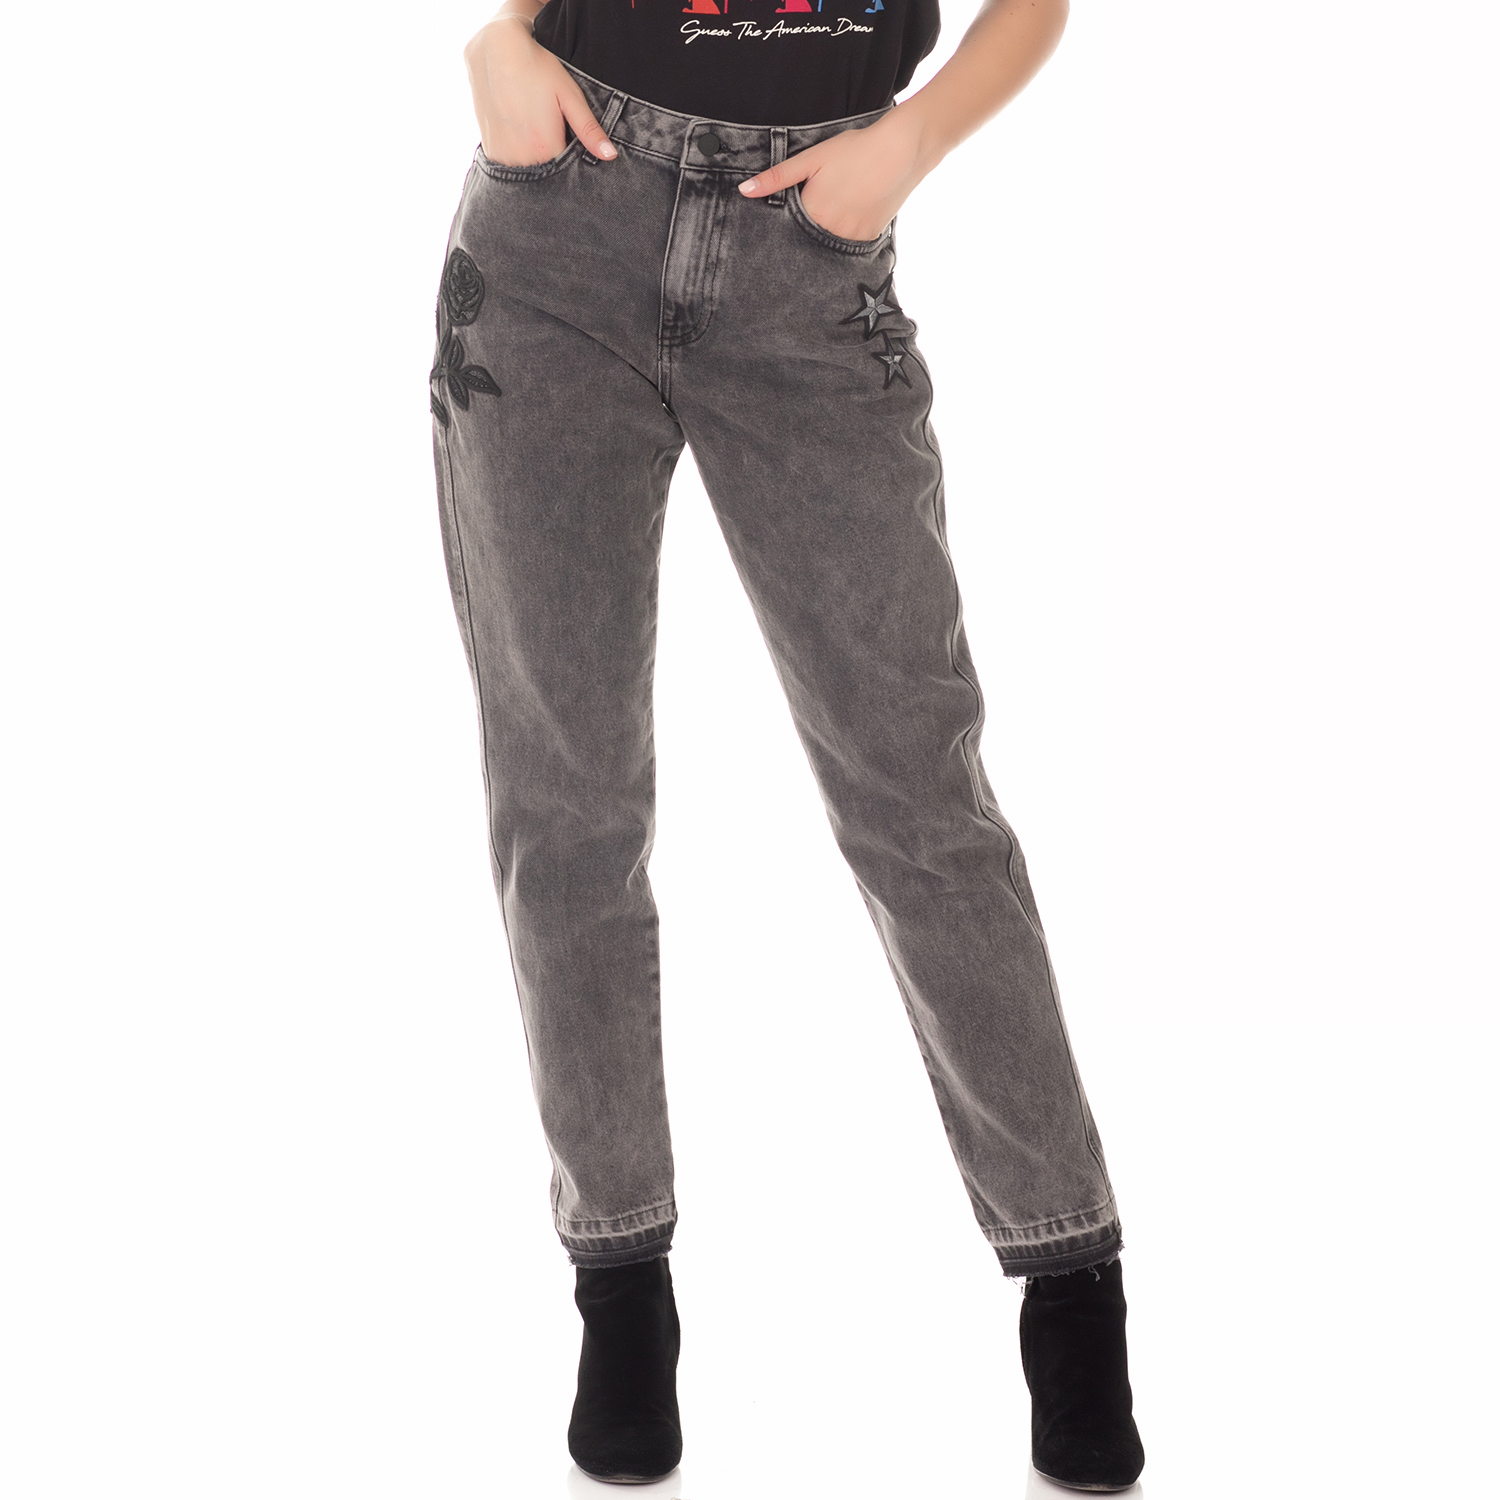 Γυναικεία/Ρούχα/Τζίν/Straight GUESS - Γυναικείο τζιν παντελόνι GUESS NINETEES ανθρακί